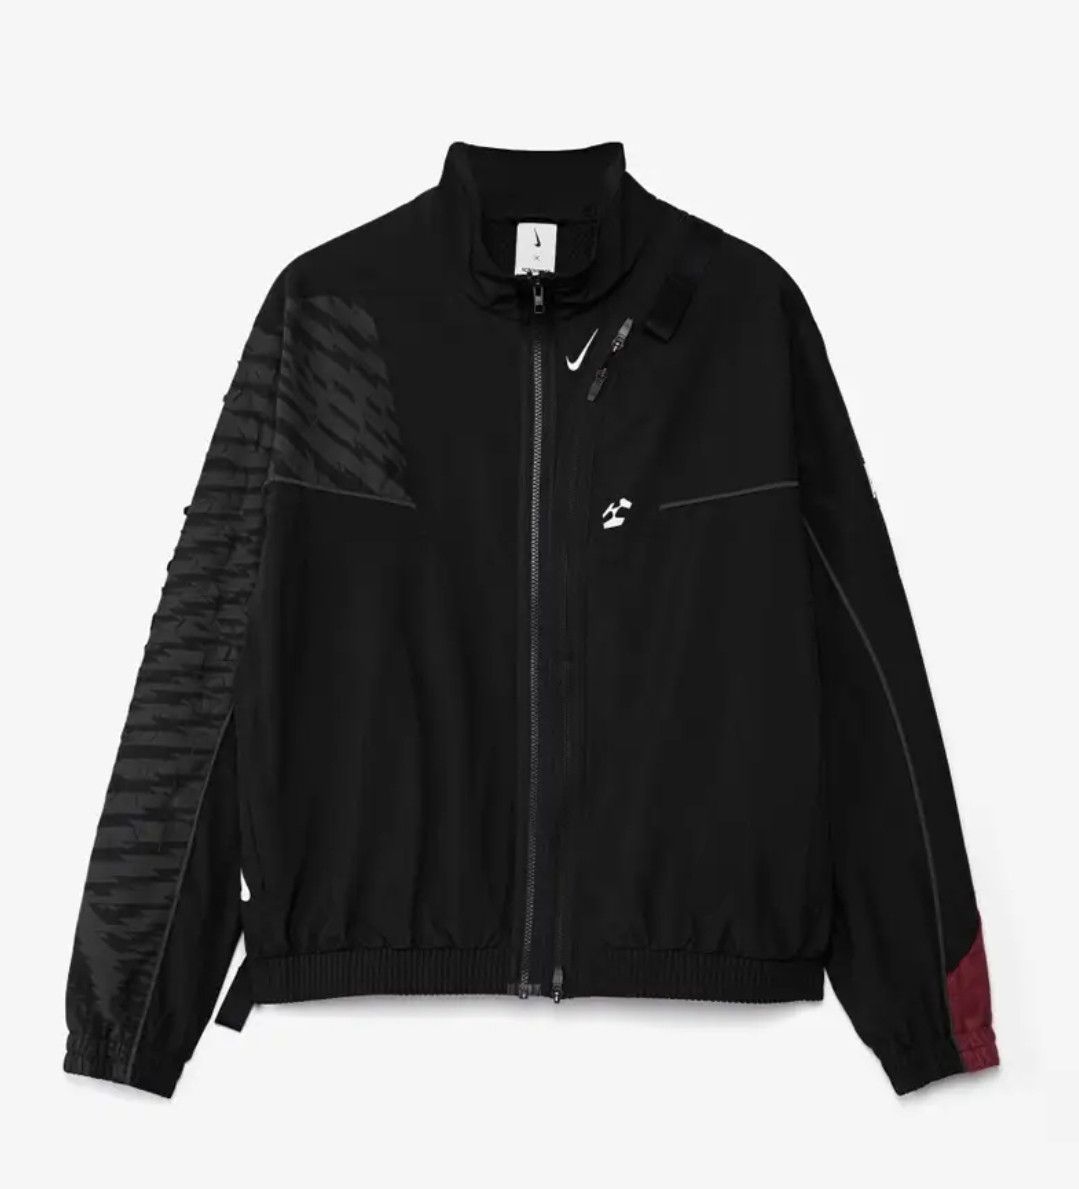 Nike Acronym Jacket | Grailed